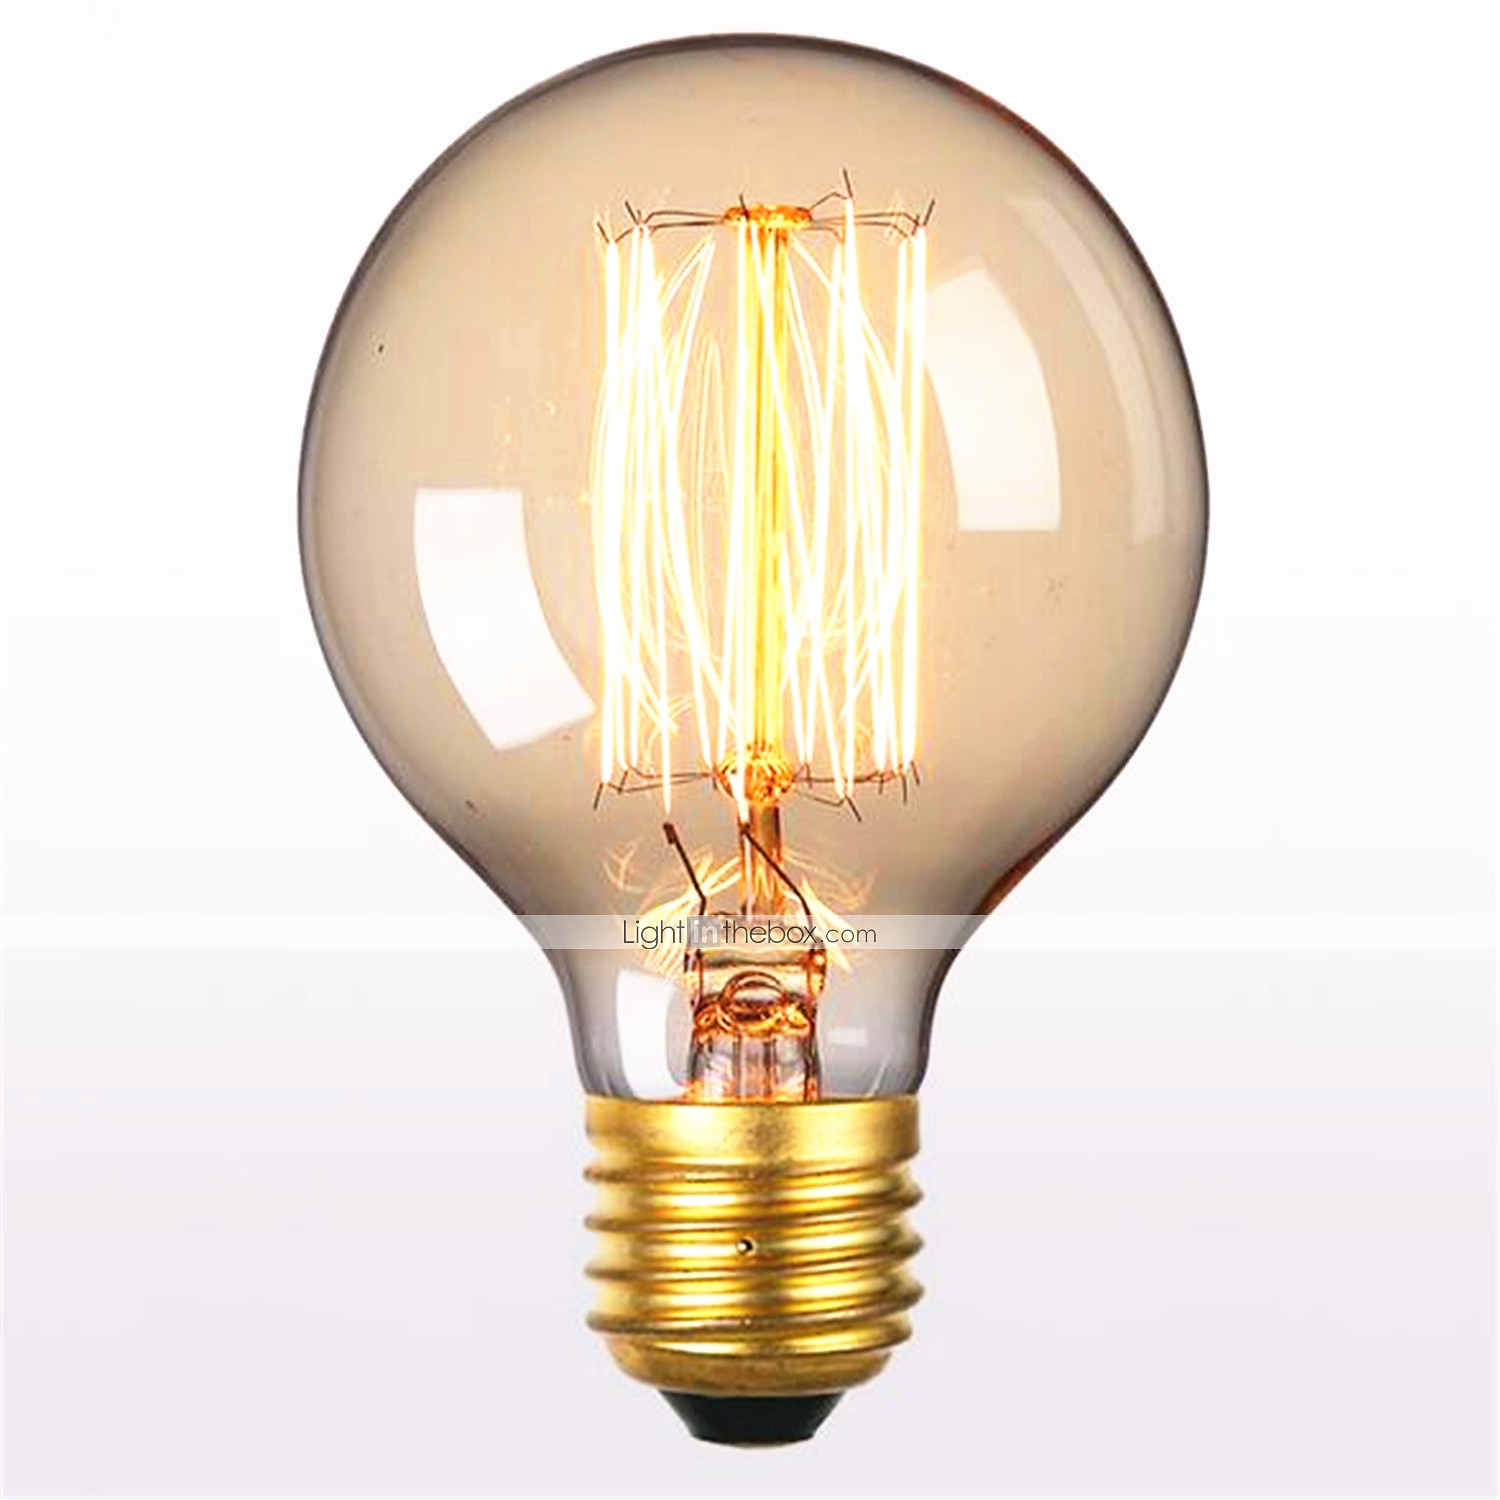 Mengjay 20 Pcs G95 Vintage Edison Bulb G95 4W LED Light Filament Bulb 30Watts Equivalent Dimmable Warm White 2200K 110V Large Globe Bulb E26 Base